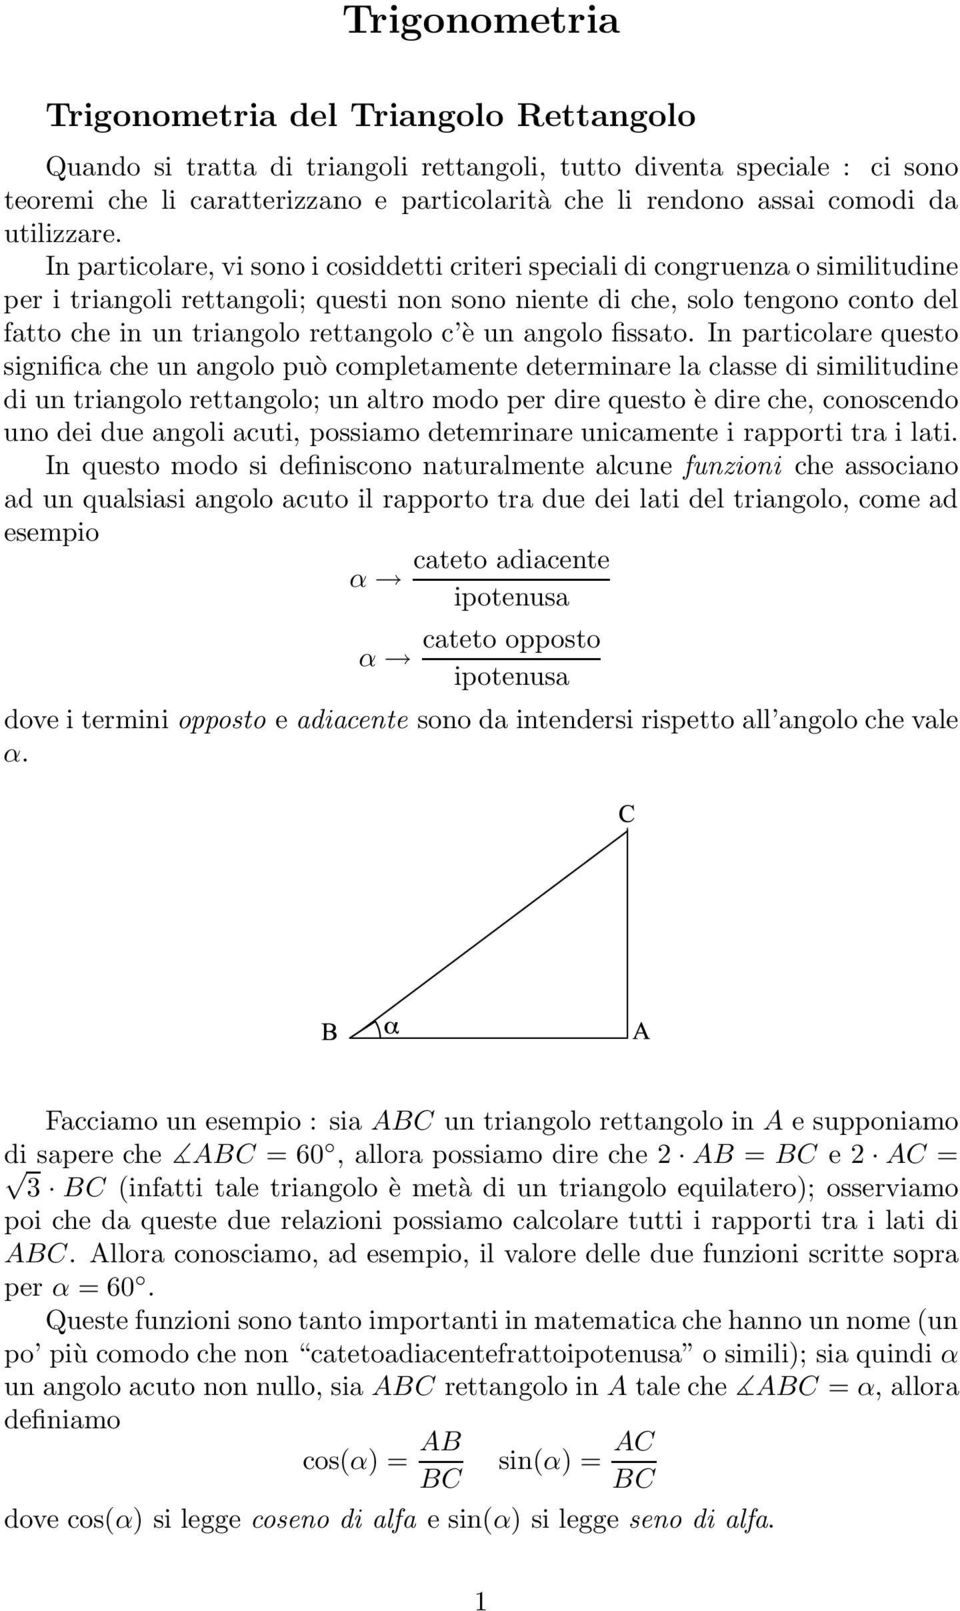 In particolare, vi sono i cosiddetti criteri speciali di congruenza o similitudine per i triangoli rettangoli; questi non sono niente di che, solo tengono conto del fatto che in un triangolo